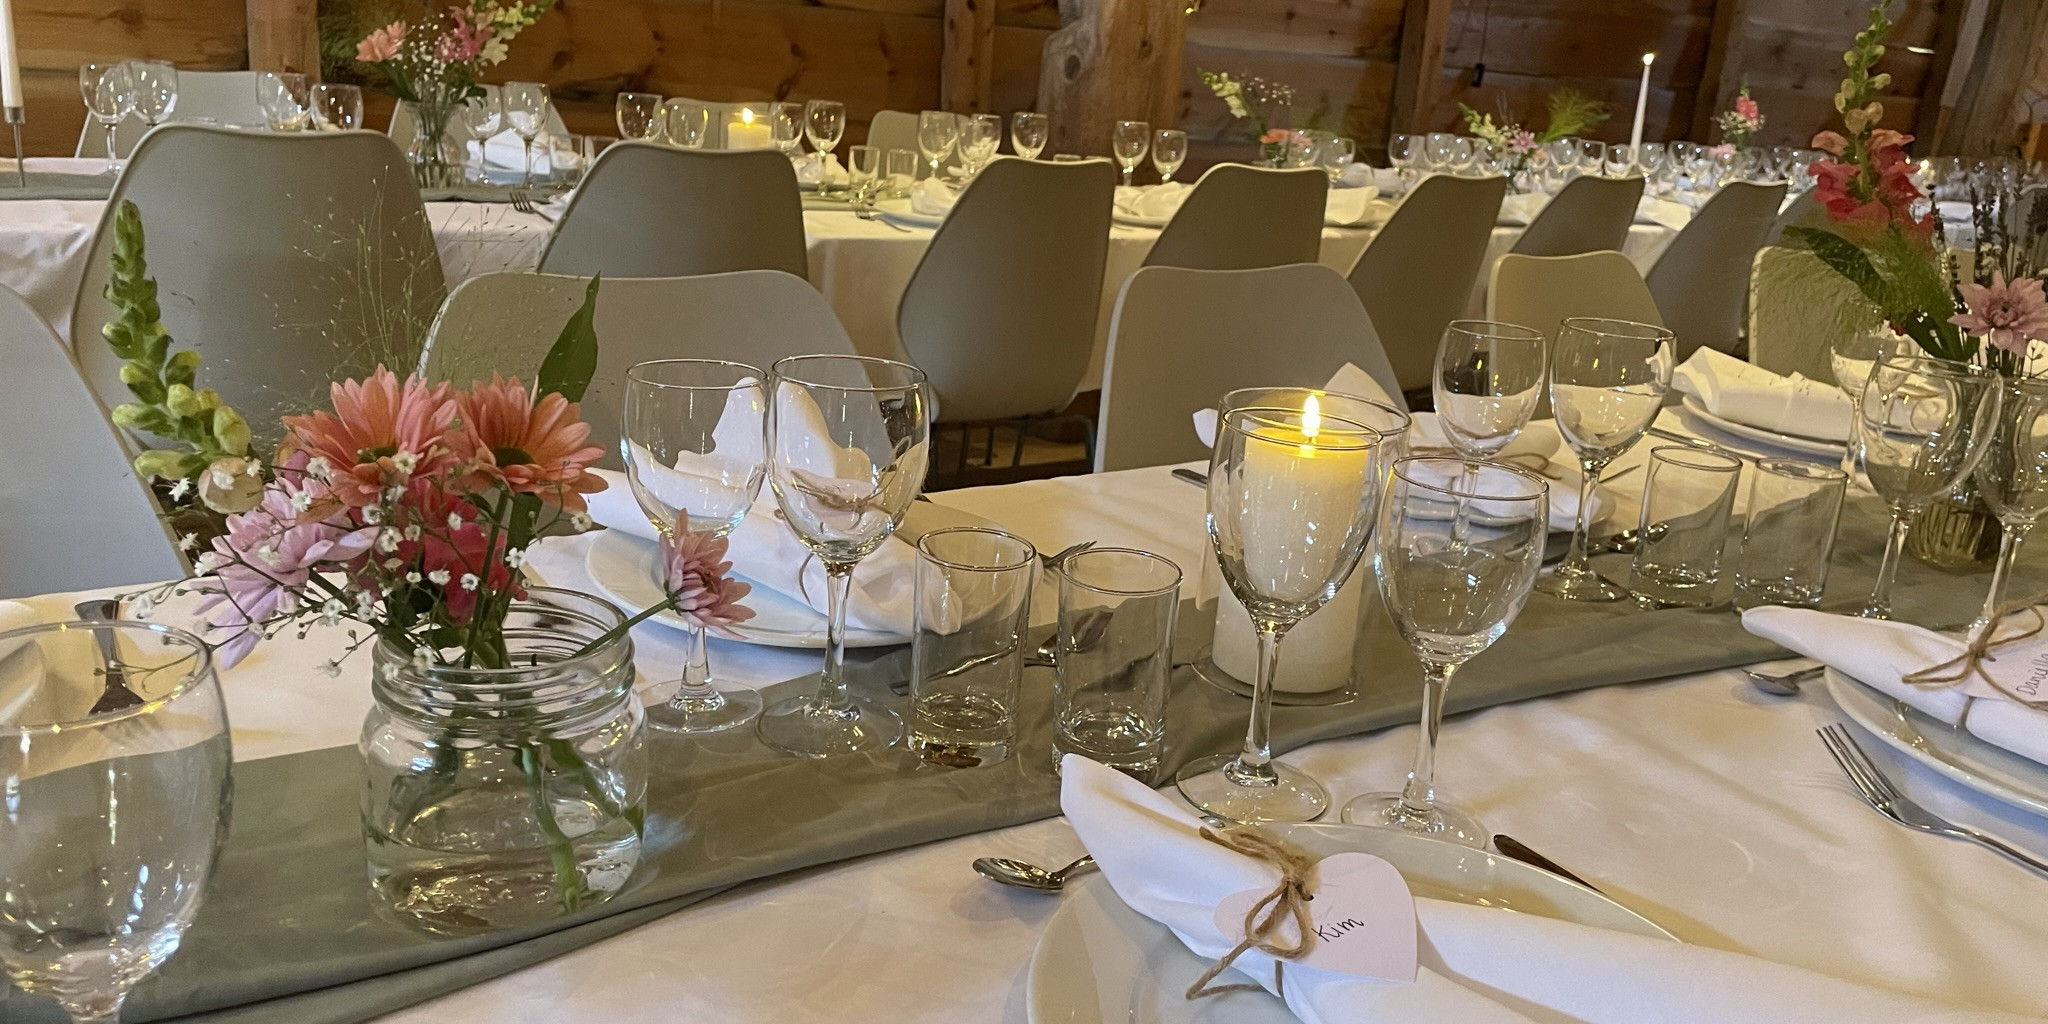 Utsnitt av odekorerte langbord til bryllaup. Borda er pynta med kvite dukar, stearinlys, serviettar med namnelappar og blomar.